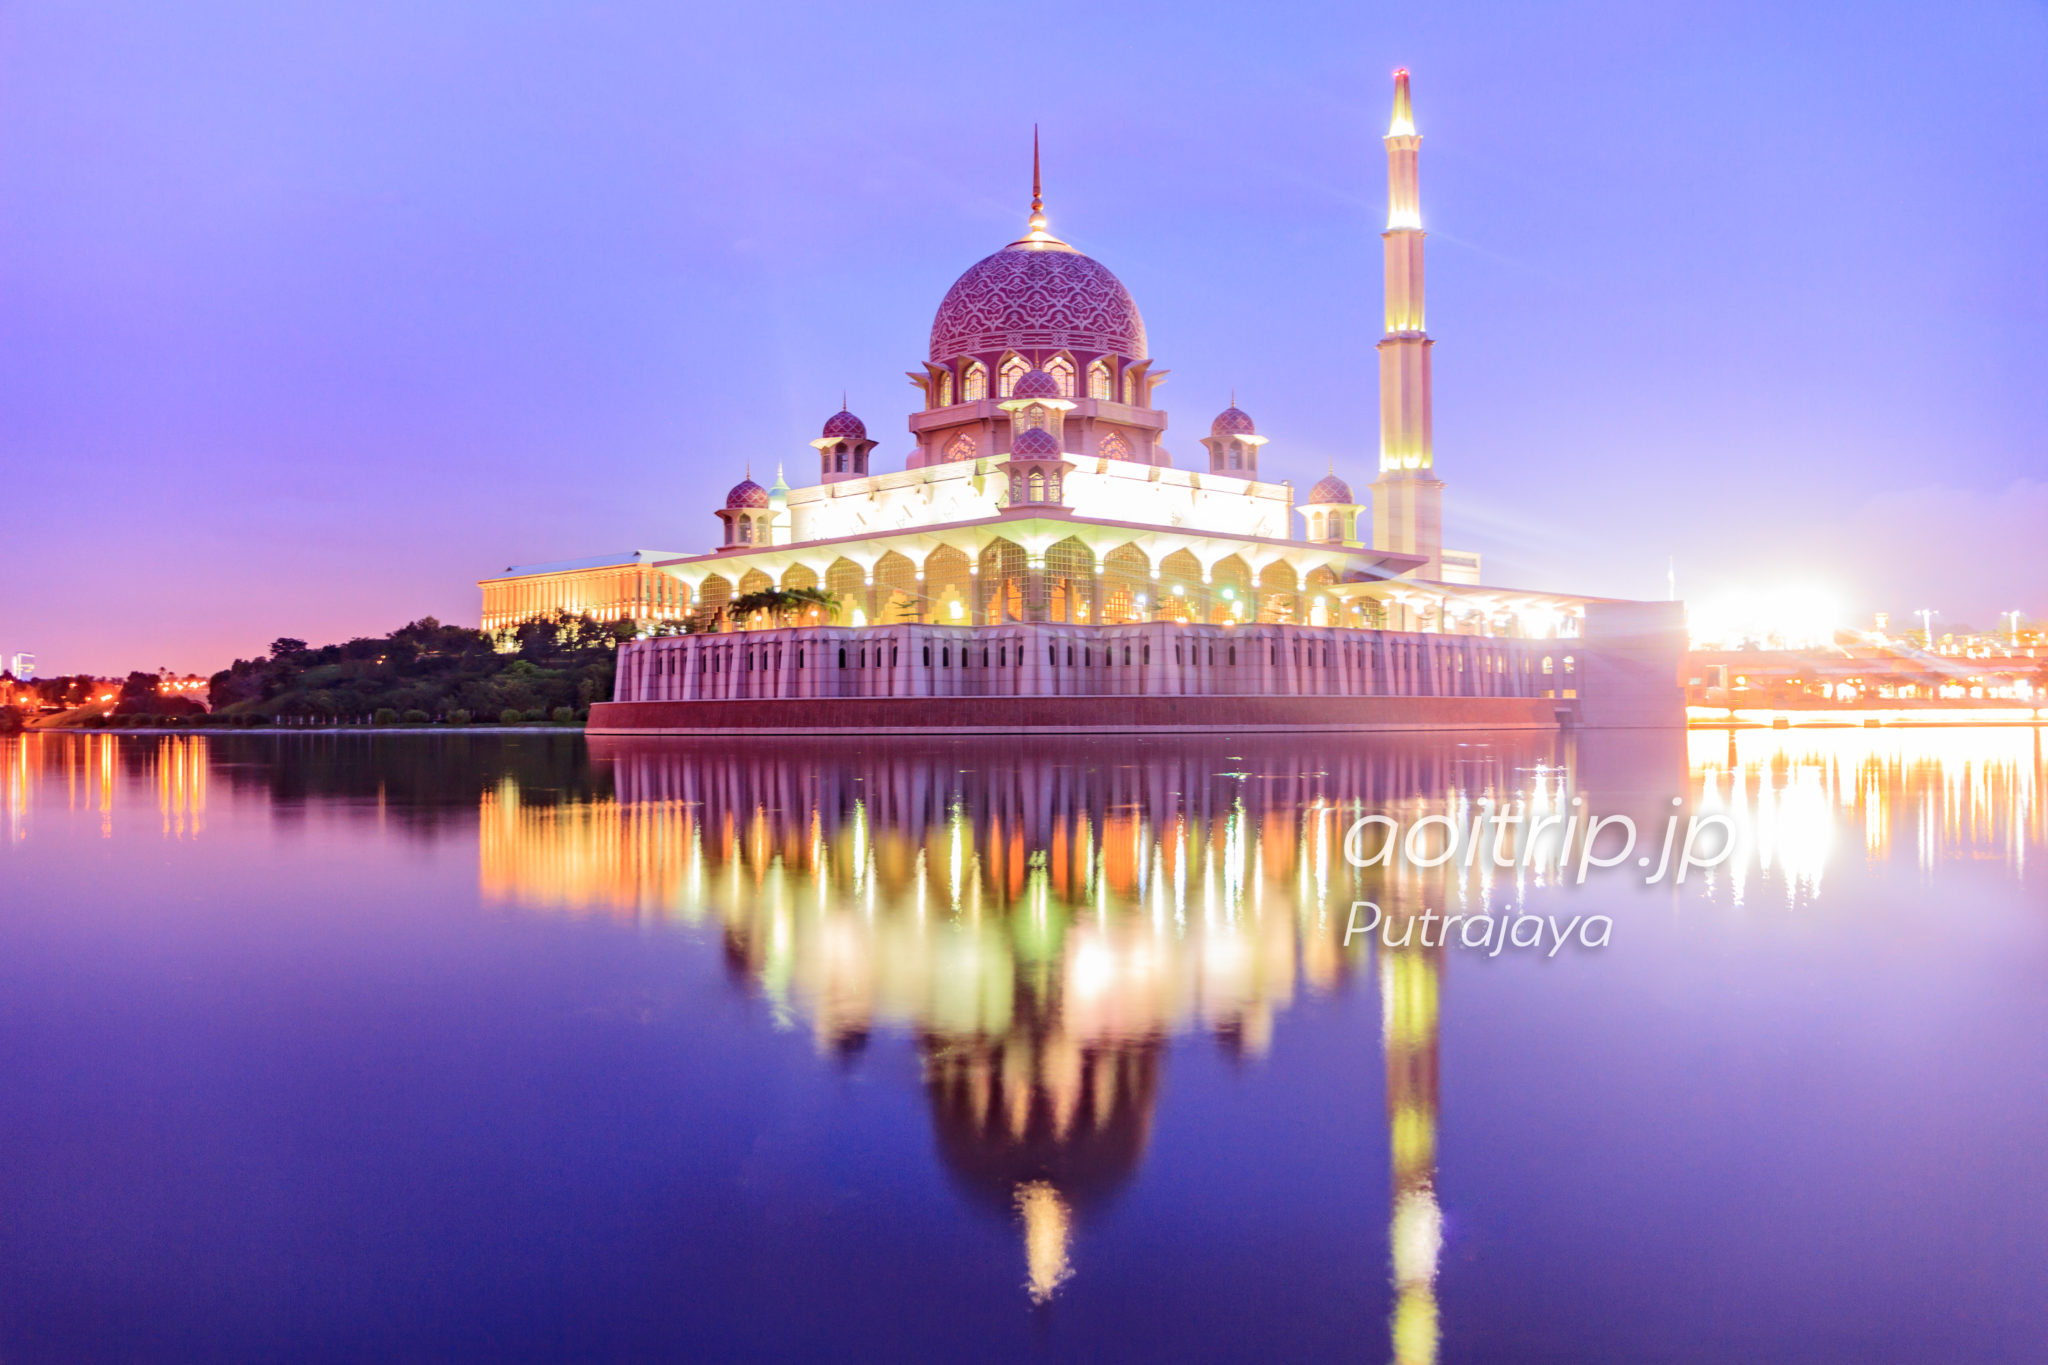 プトラジャヤ観光 バラ色花崗岩のピンクモスクほか 行き方まで マレーシア あおいとりっぷ